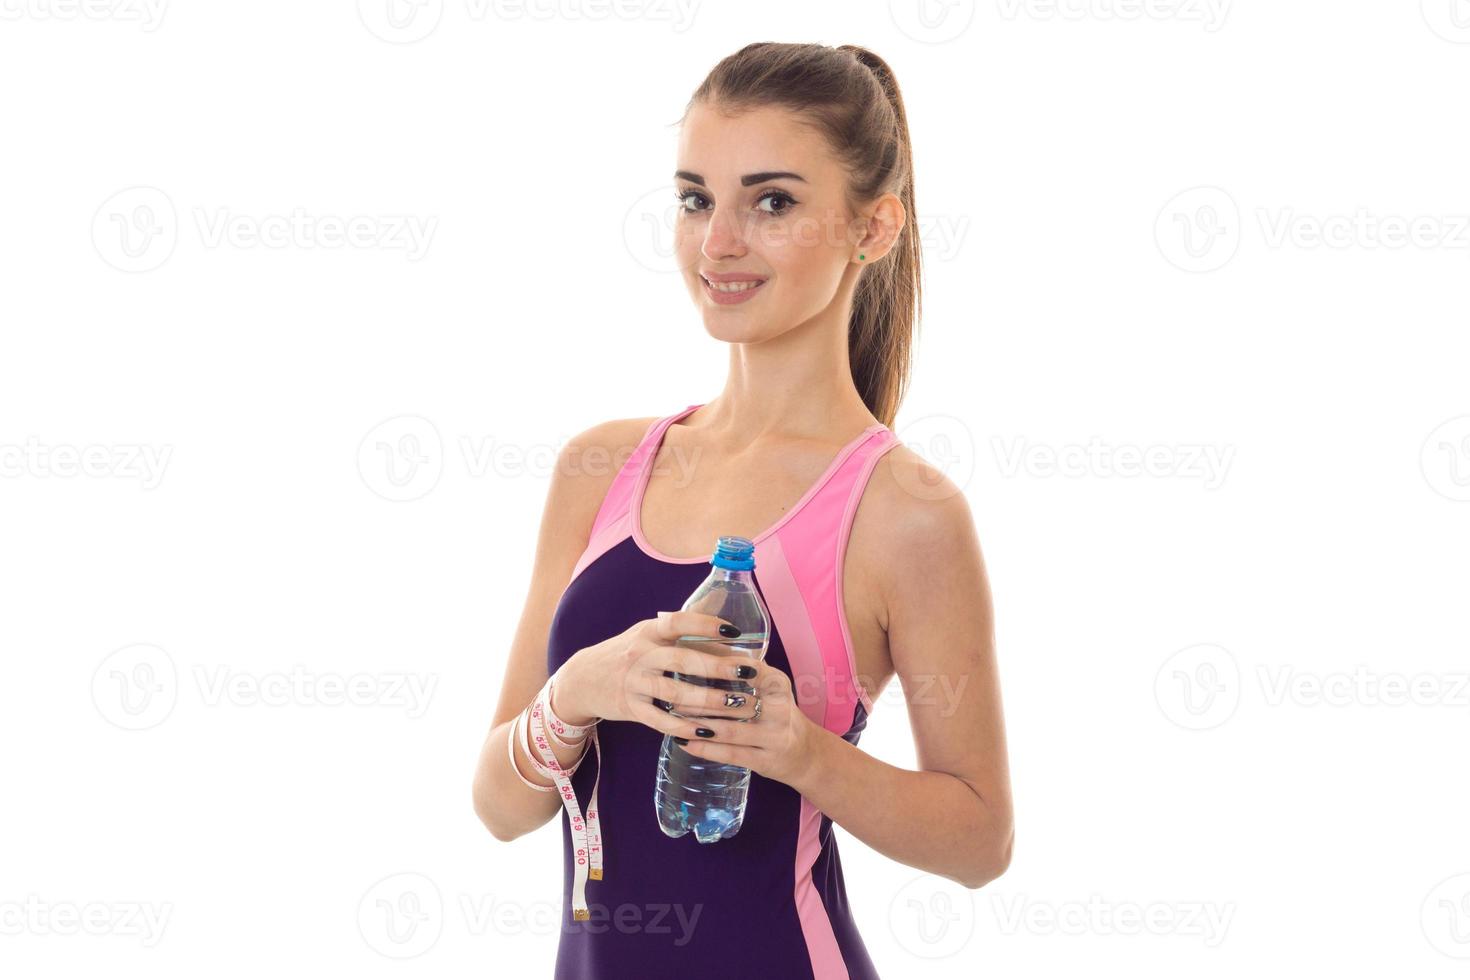 belle fille mince dans un costume de sport souriant a l'air droit et garde l'eau photo